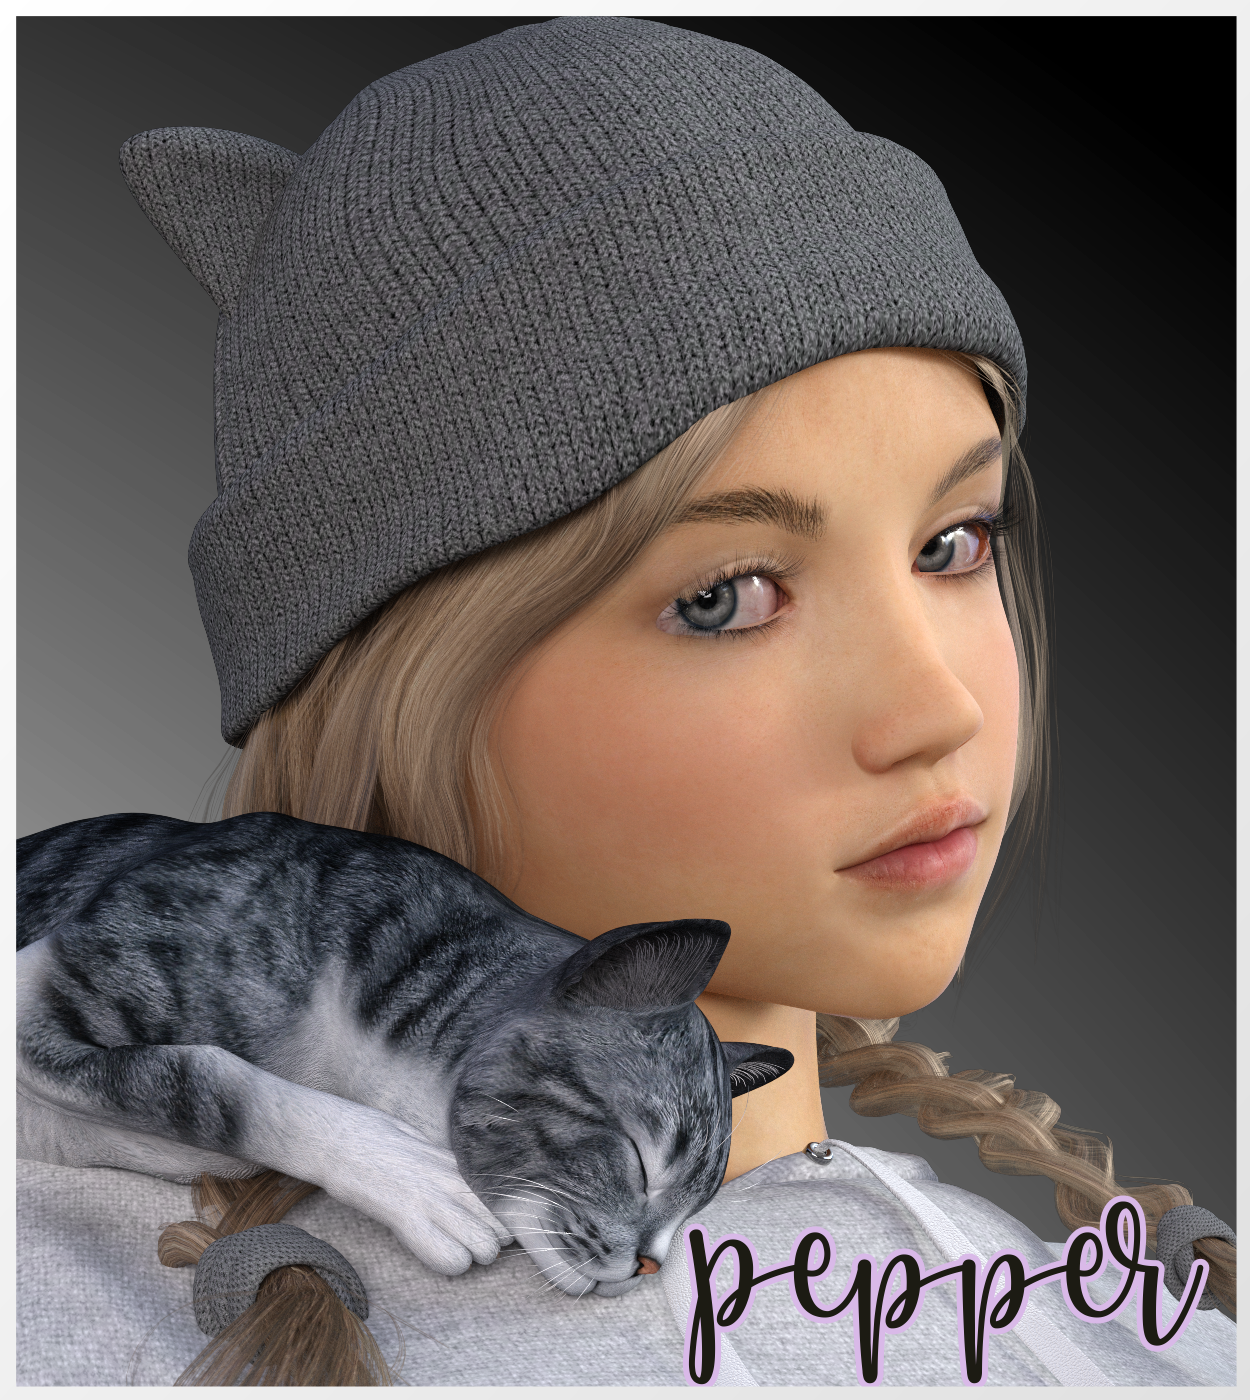 Pepper - Teen G8F by: LUNA3D, 3D Models by Daz 3D